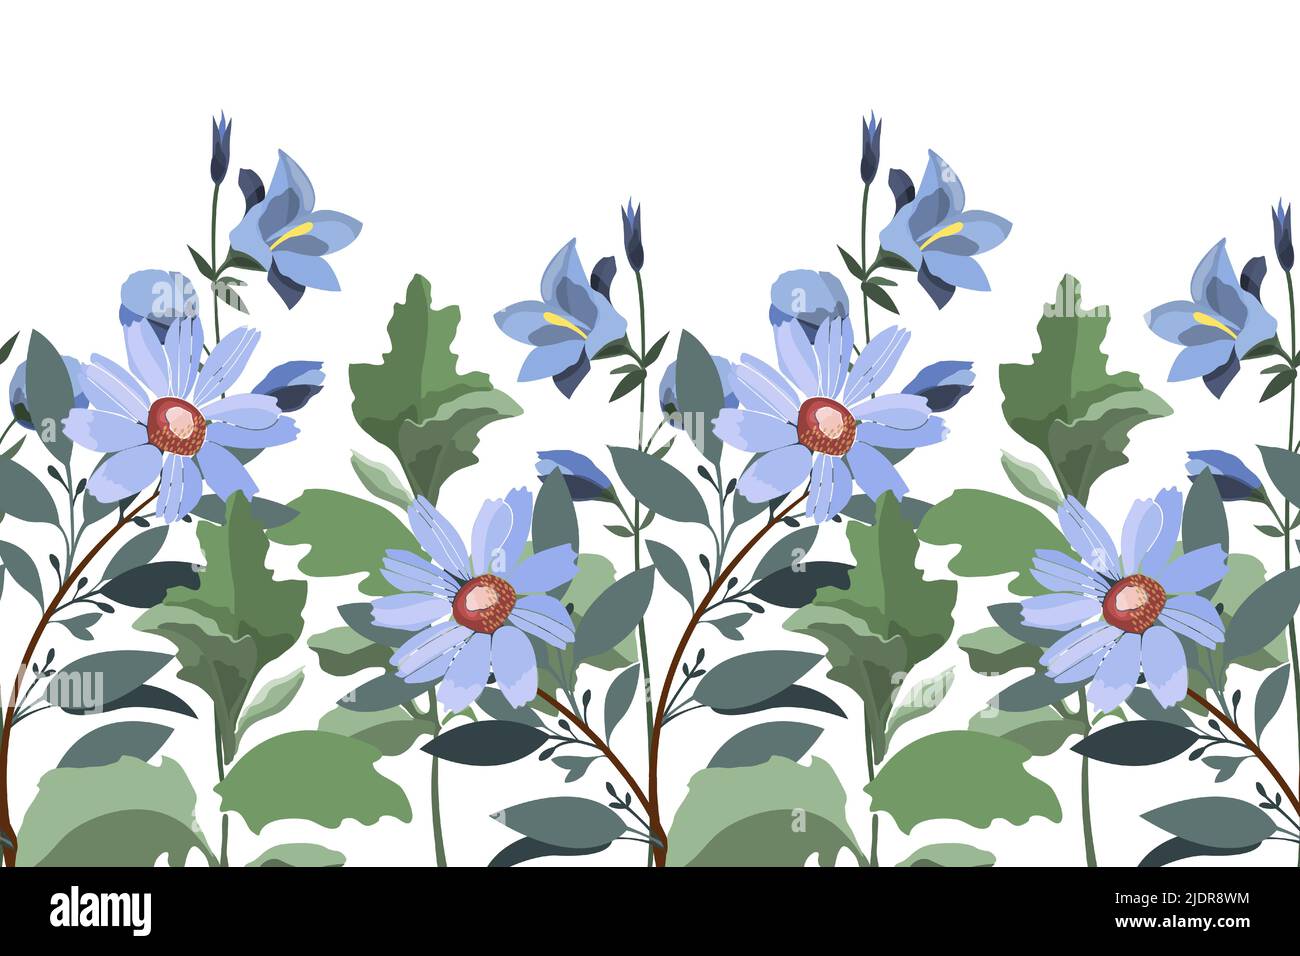 Motif fleuri vectoriel sans couture, bordure. Design horizontal panoramique avec fleurs bleues et gaillardia, brindilles et feuilles sur fond blanc. Illustration de Vecteur